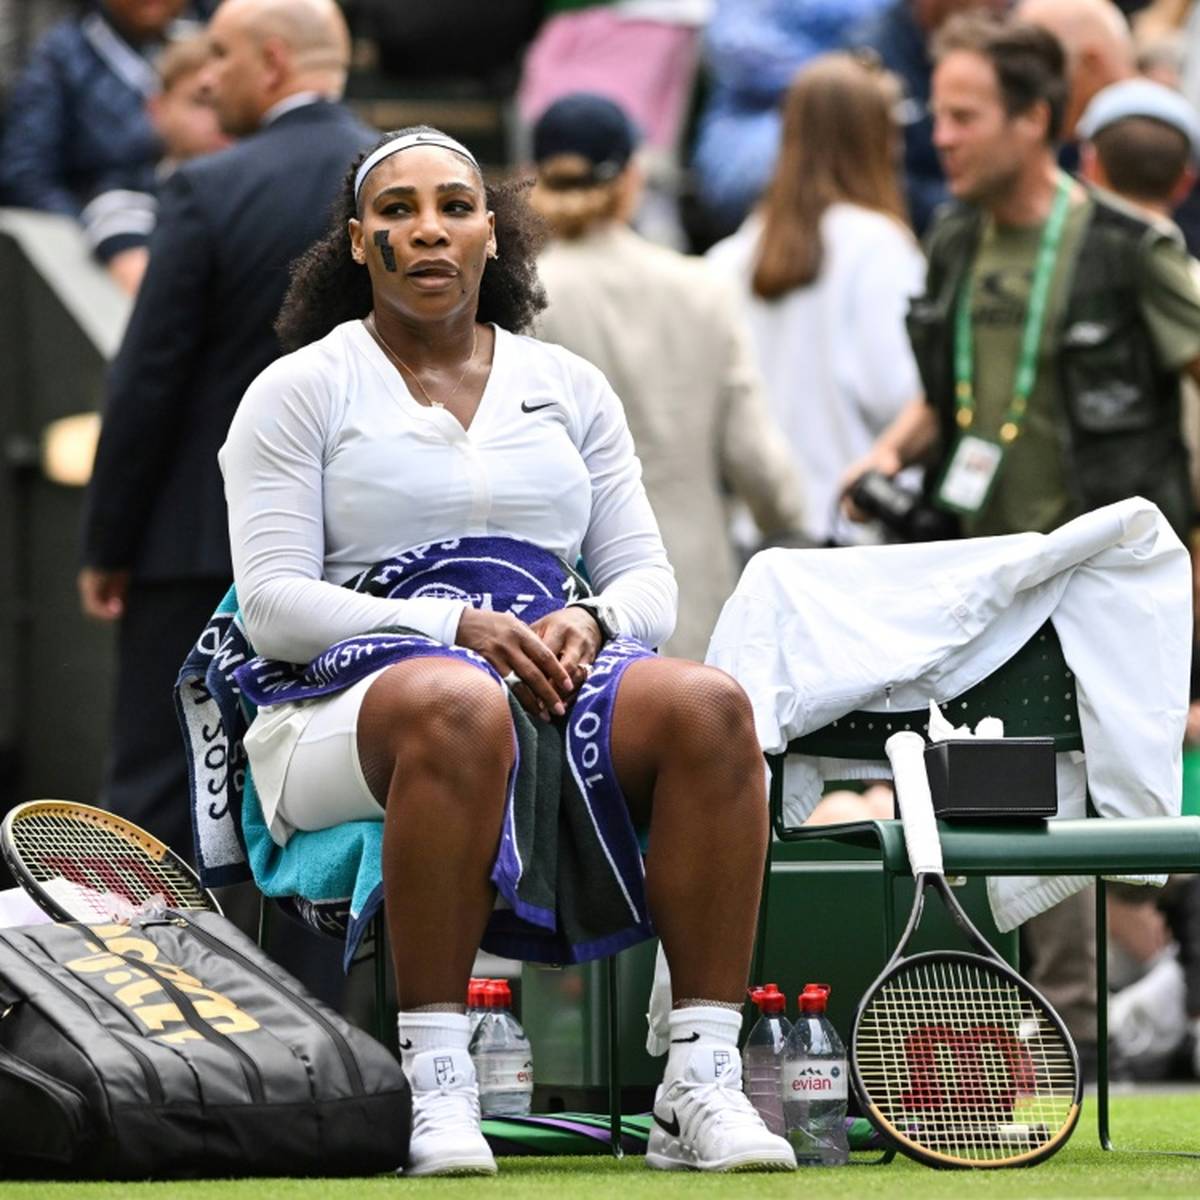 Nach der dramatischen Niederlage spricht Serena Williams über ihre sportliche Zukunft. Sie lässt dabei Raum für Spekulationen.